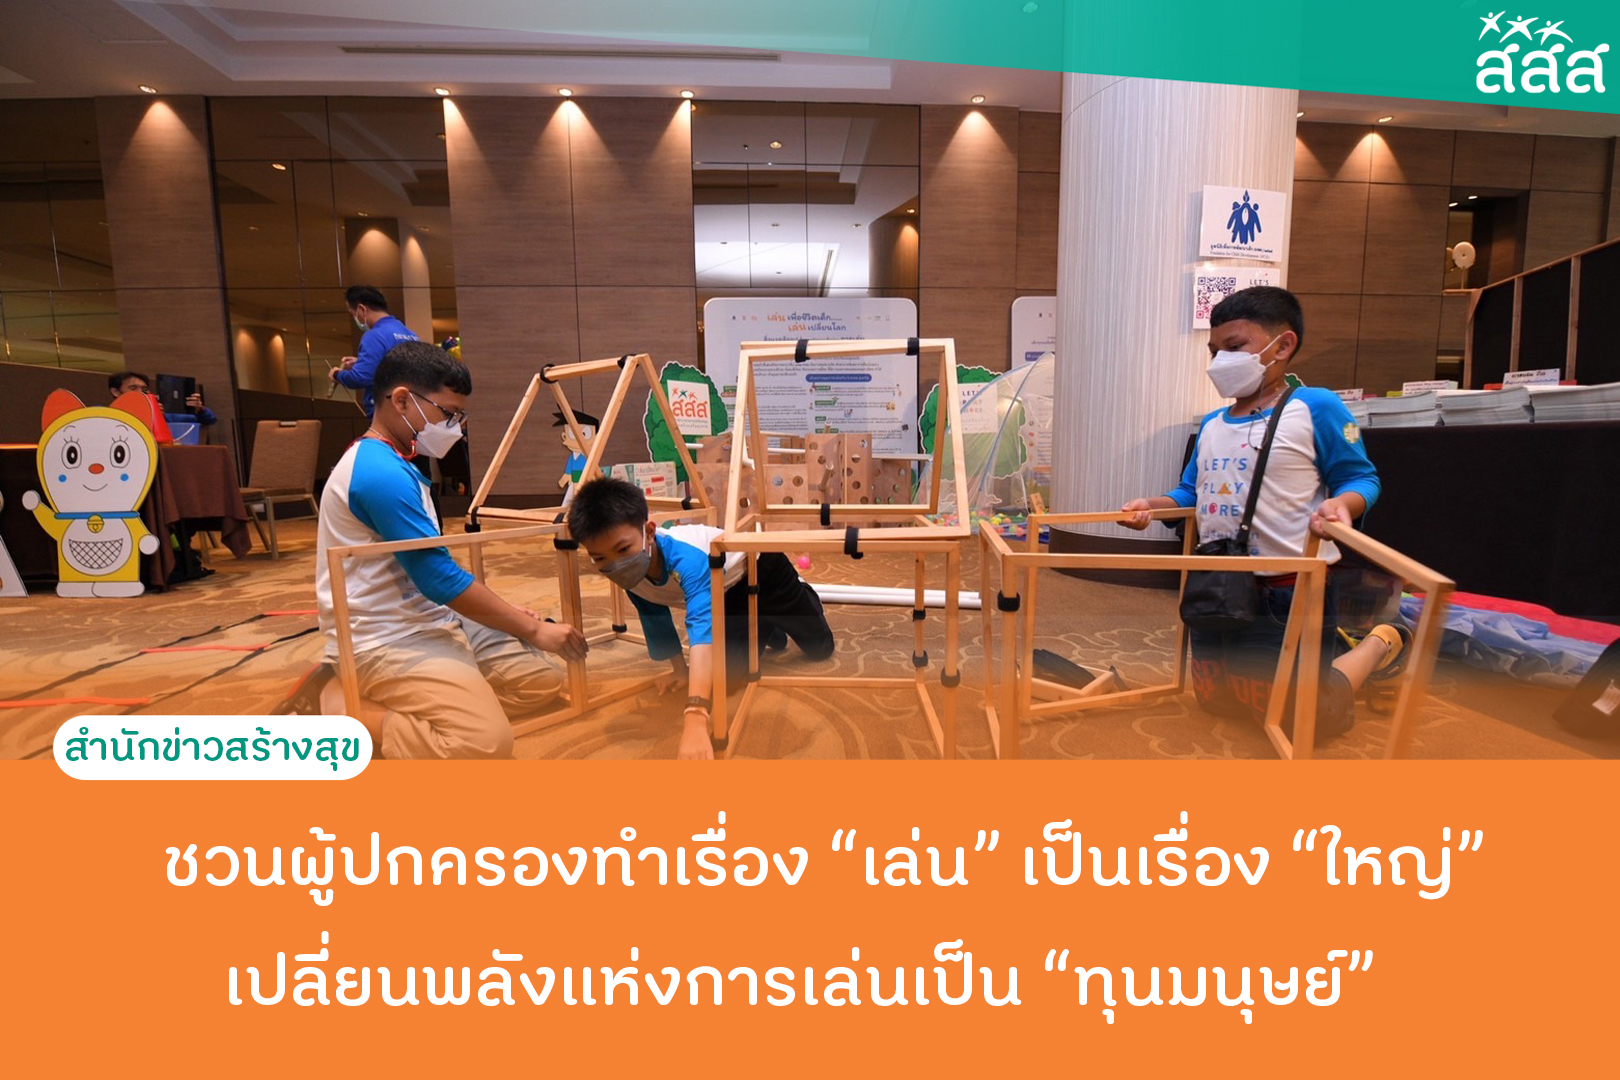 ชวนผู้ปกครองทำเรื่องเล่นเป็นเรื่องใหญ่ เปลี่ยนพลังเเห่งการเล่นเป็นทุนมนุษย์ thaihealth